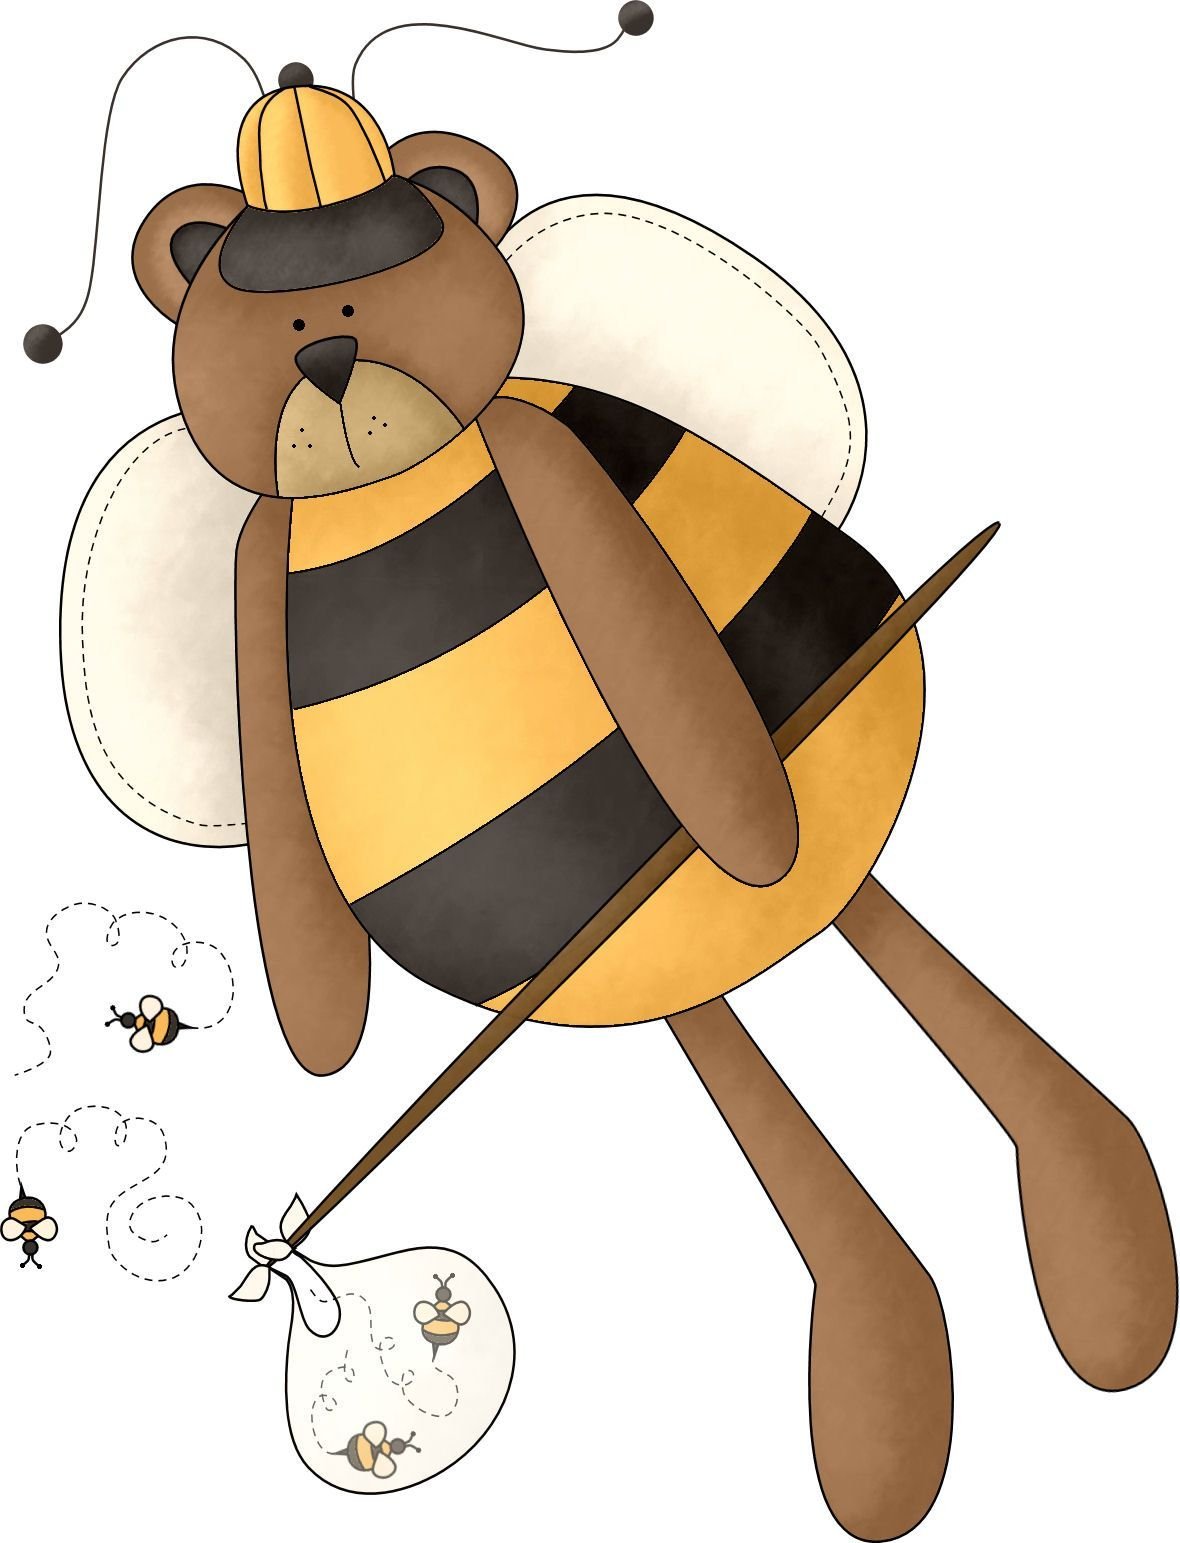 Медведя пчела мед. Беар пчелы. Медведь и пчелы. Мишка с пчелкой. Медвежонок и пчелы.